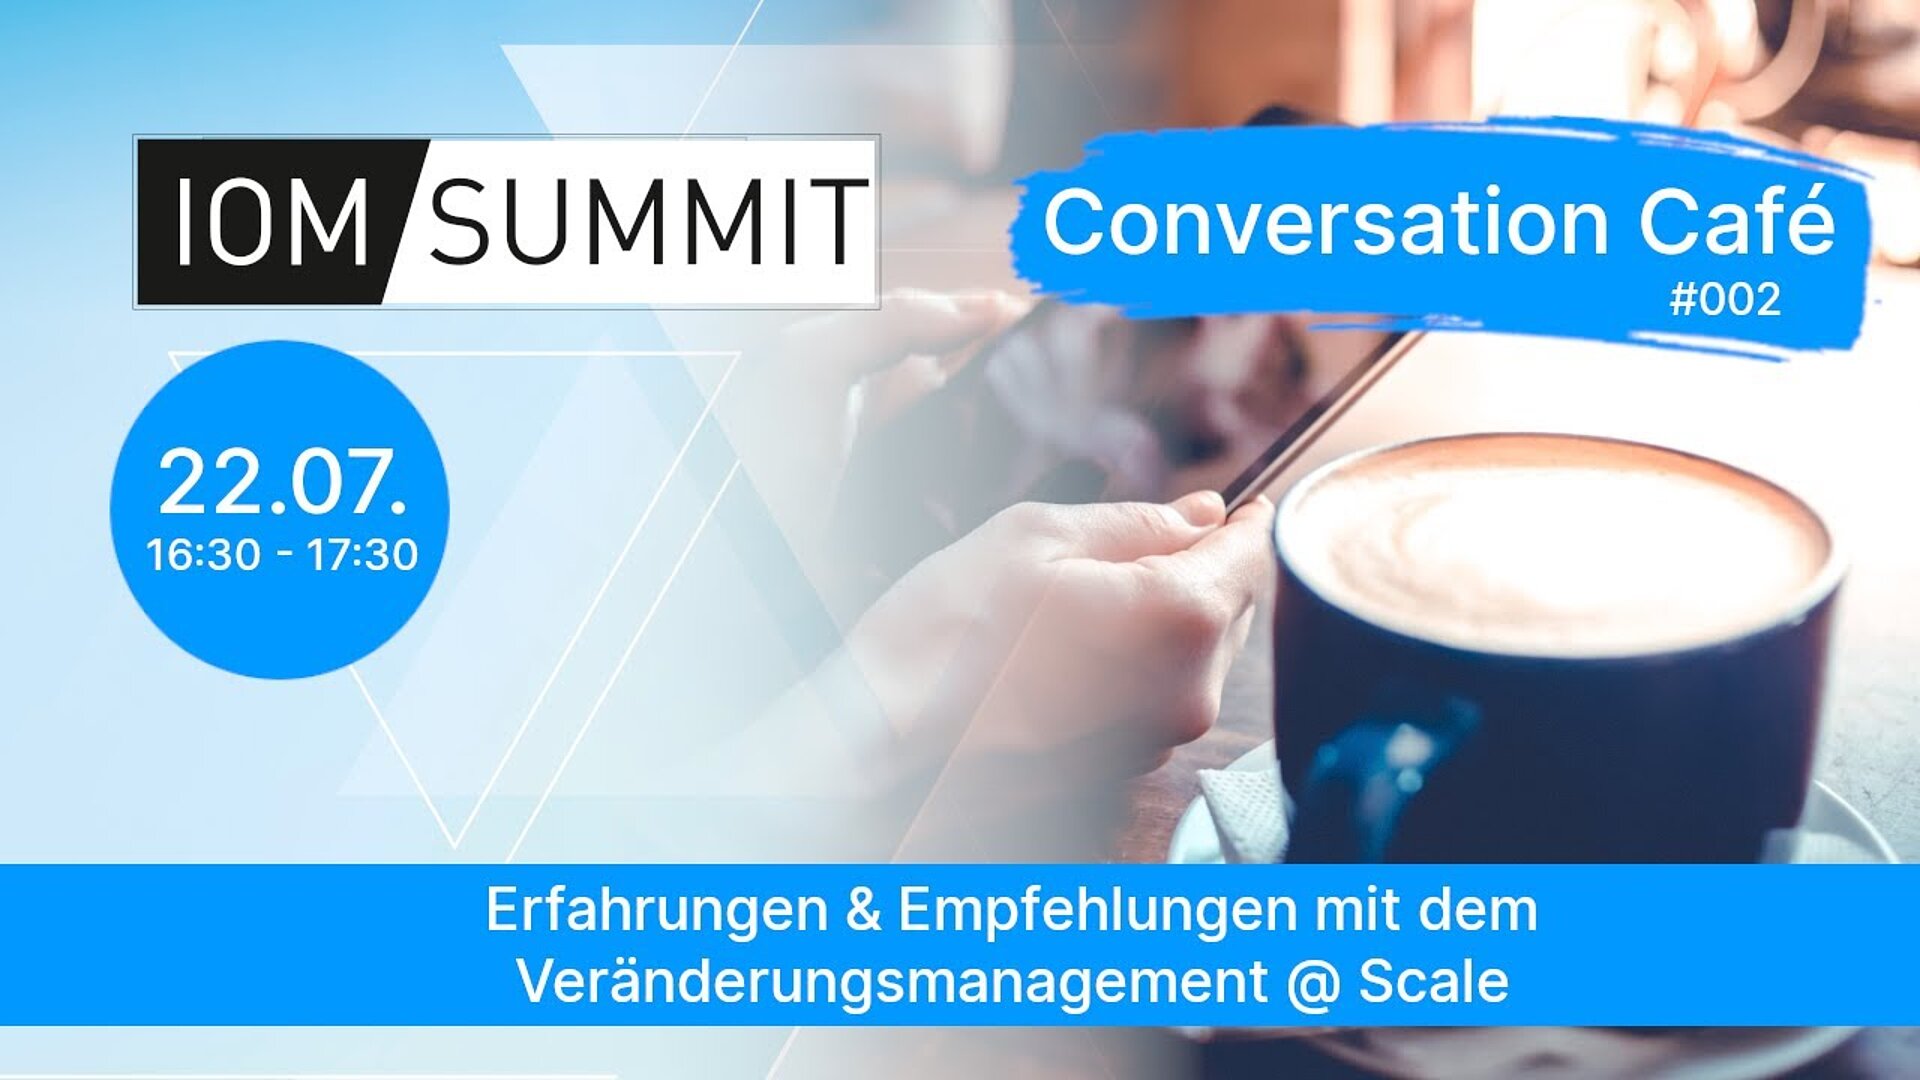 Conversation Café: Erfahrungen & Empfehlungen mit einem Veränderungsmanagement @ Scale